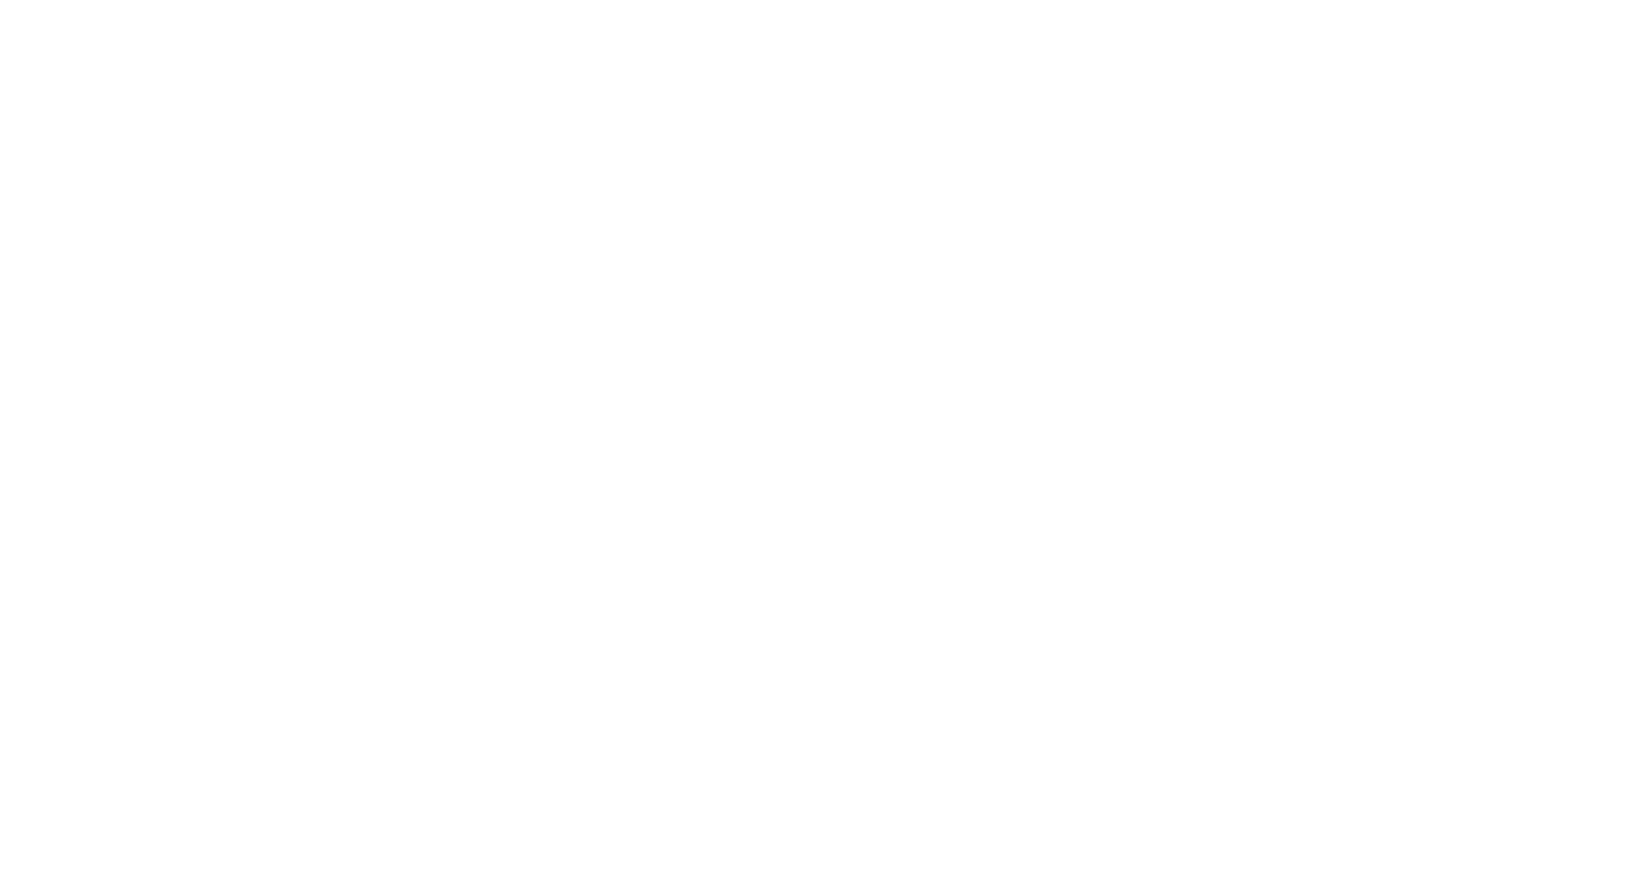 Кейс сервиса BRANDNATION - Фирменный стиль и брендинг кофейни. Брендинговое агентство BRANDNATION в Москве и Санкт-Петербурге. Услуги: разработка логотипа и фирменного стиля, дизайн упаковки, брендбук, ребрендинг, разработка сайта.